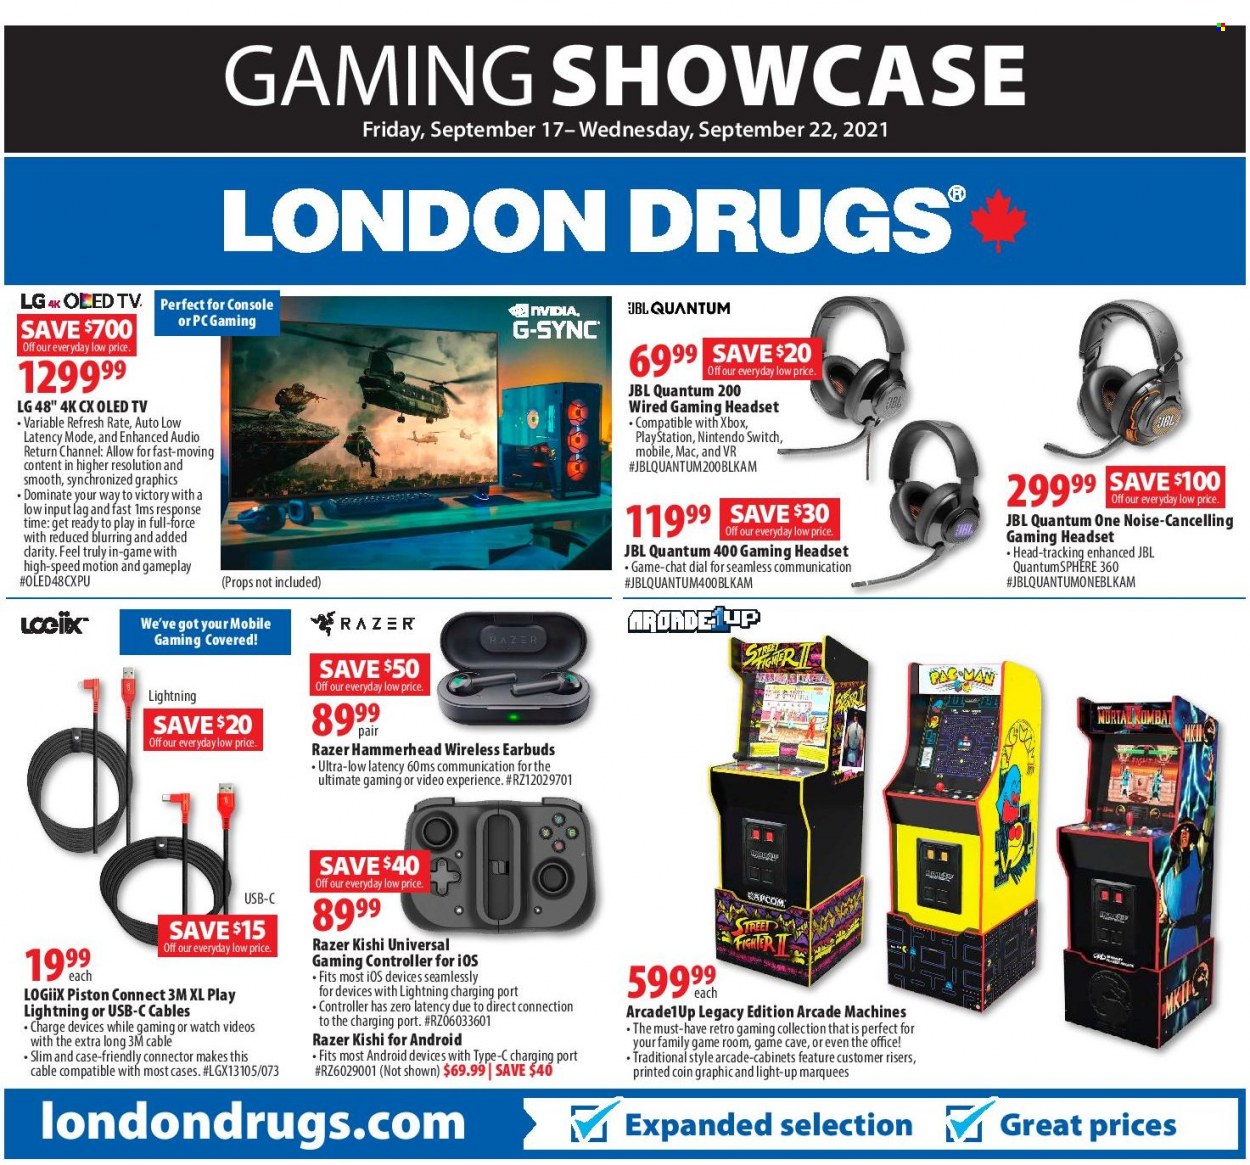 thumbnail - Circulaire London Drugs - 17 Septembre 2021 - 22 Septembre 2021 - Produits soldés - téléviseur, LG, console, JBL, Xbox, Nintendo Switch, Nvidia, Playstation. Page 1.